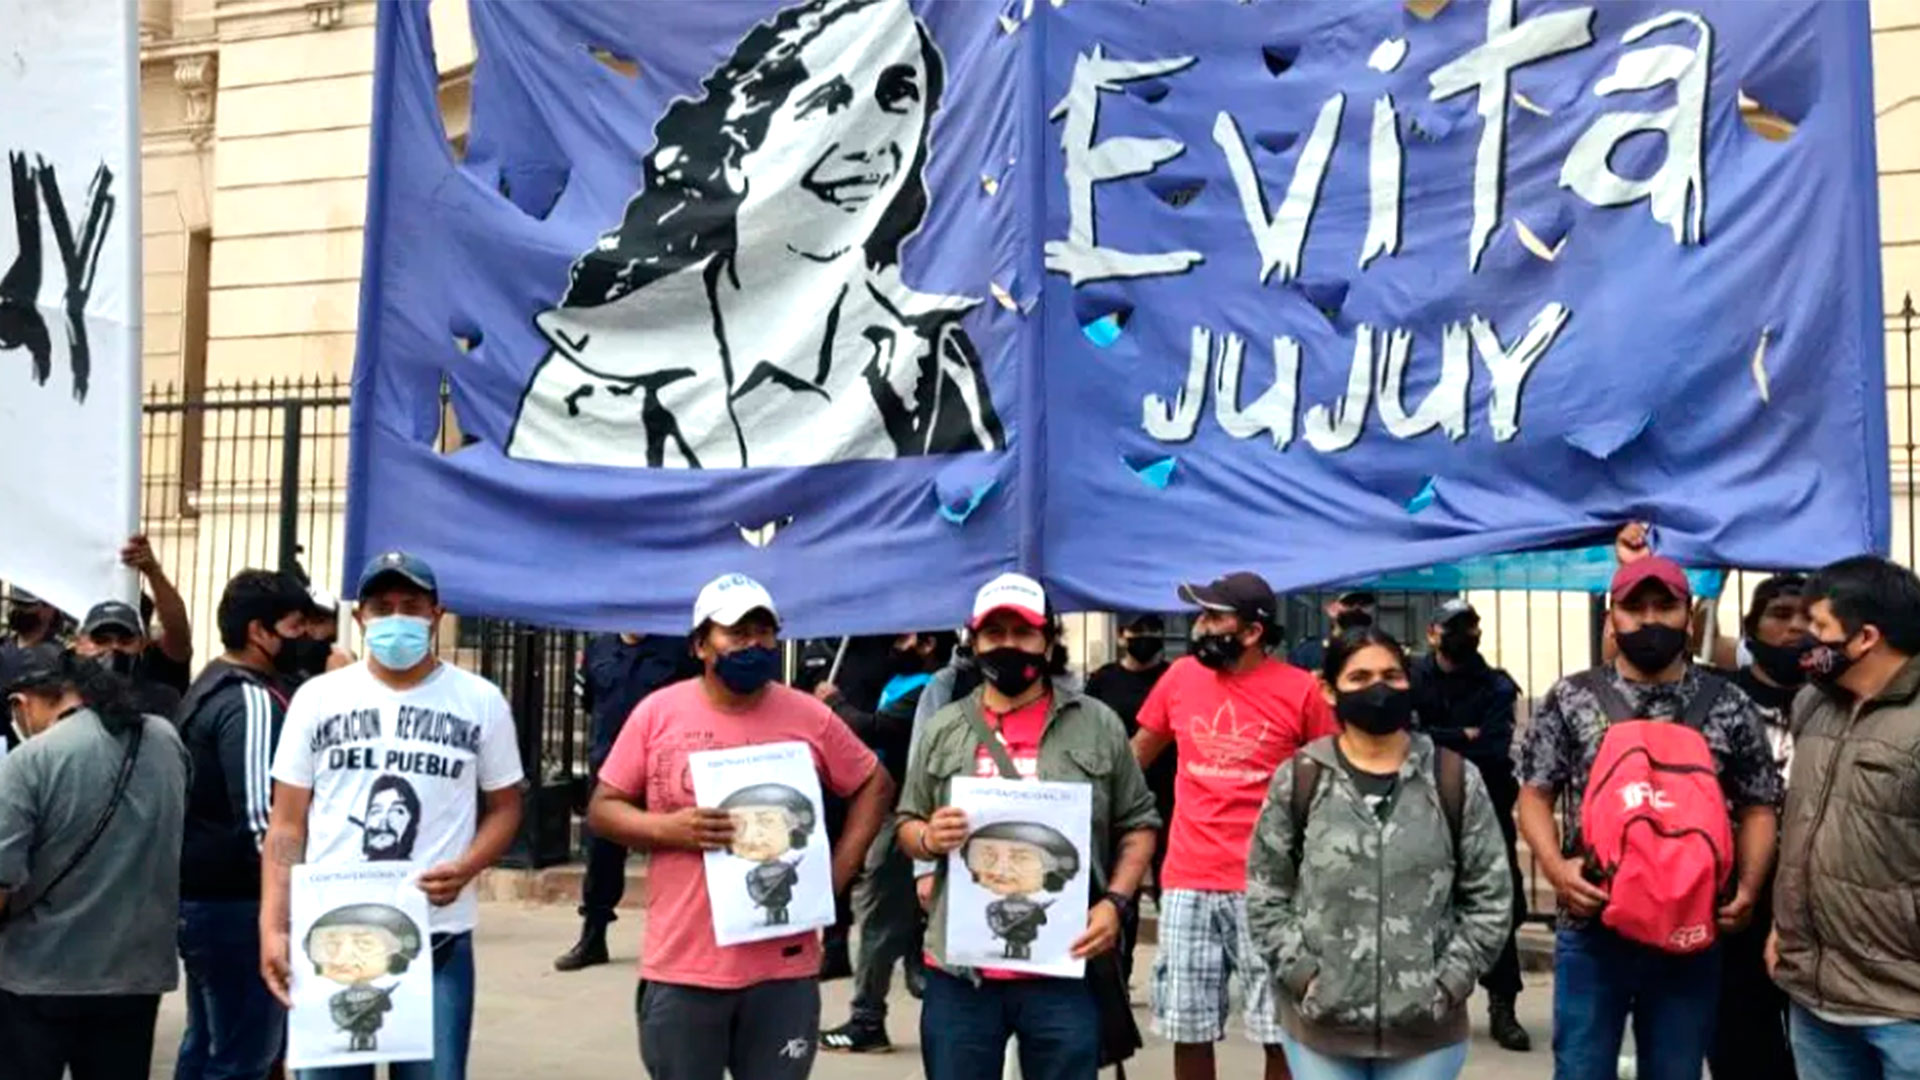 José Surita, el referente del Movimiento Evita de Jujuy participó de la entrega de tierras por parte de funcionarios nacionales, también vinculados al Evita